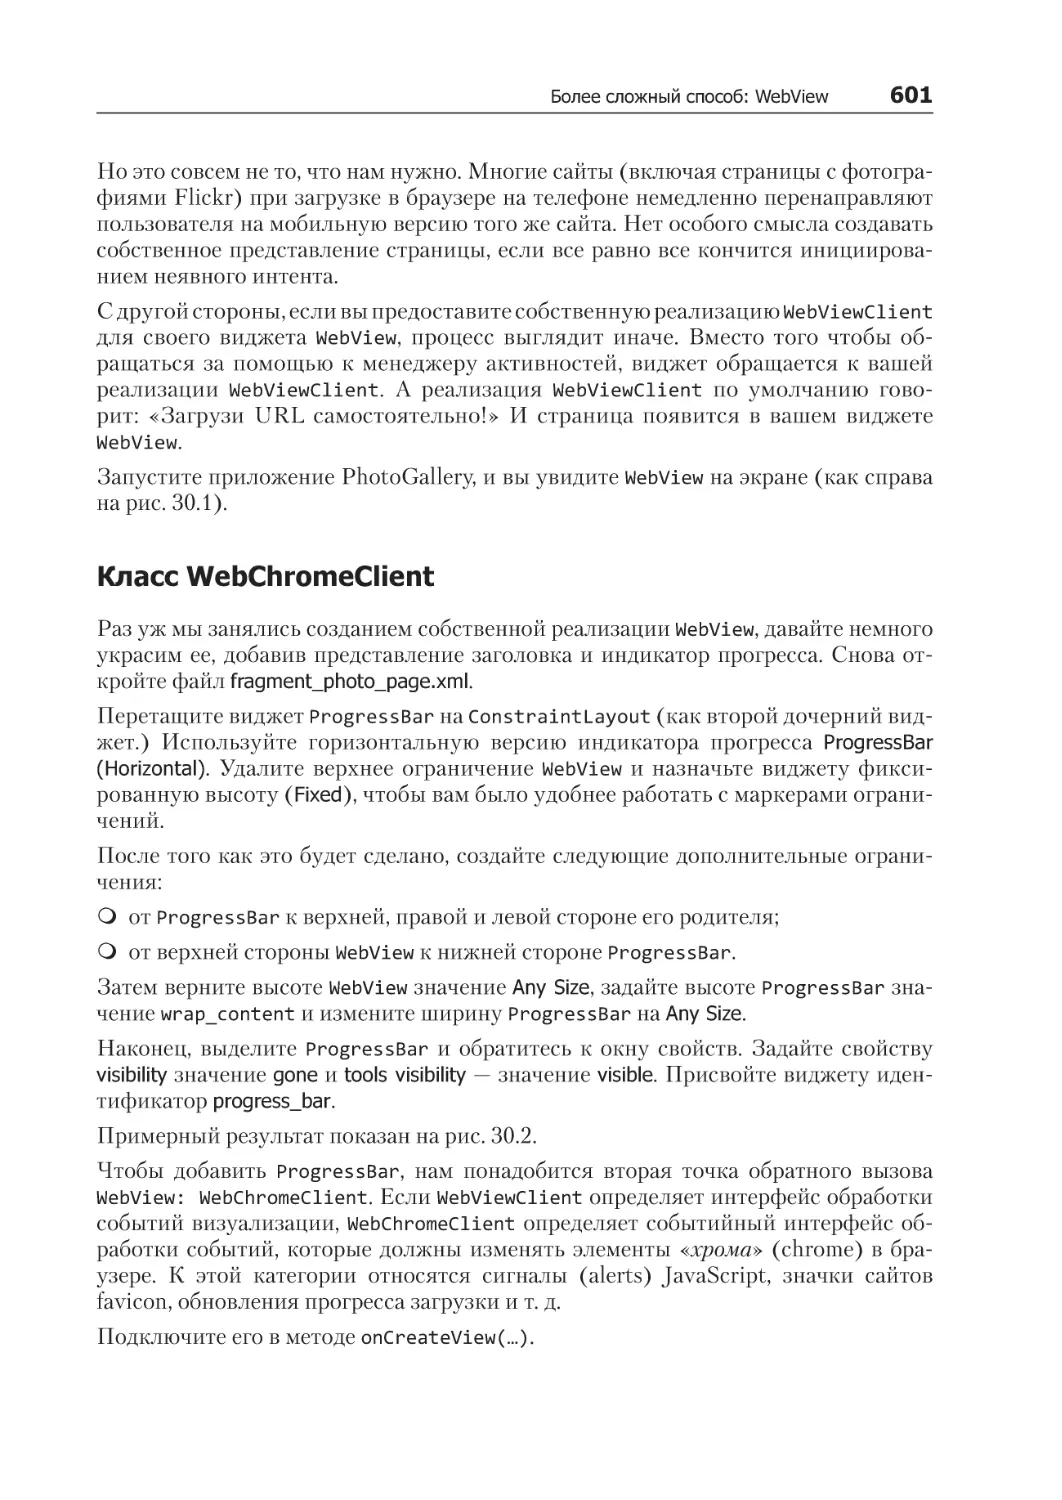 Класс WebChromeClient